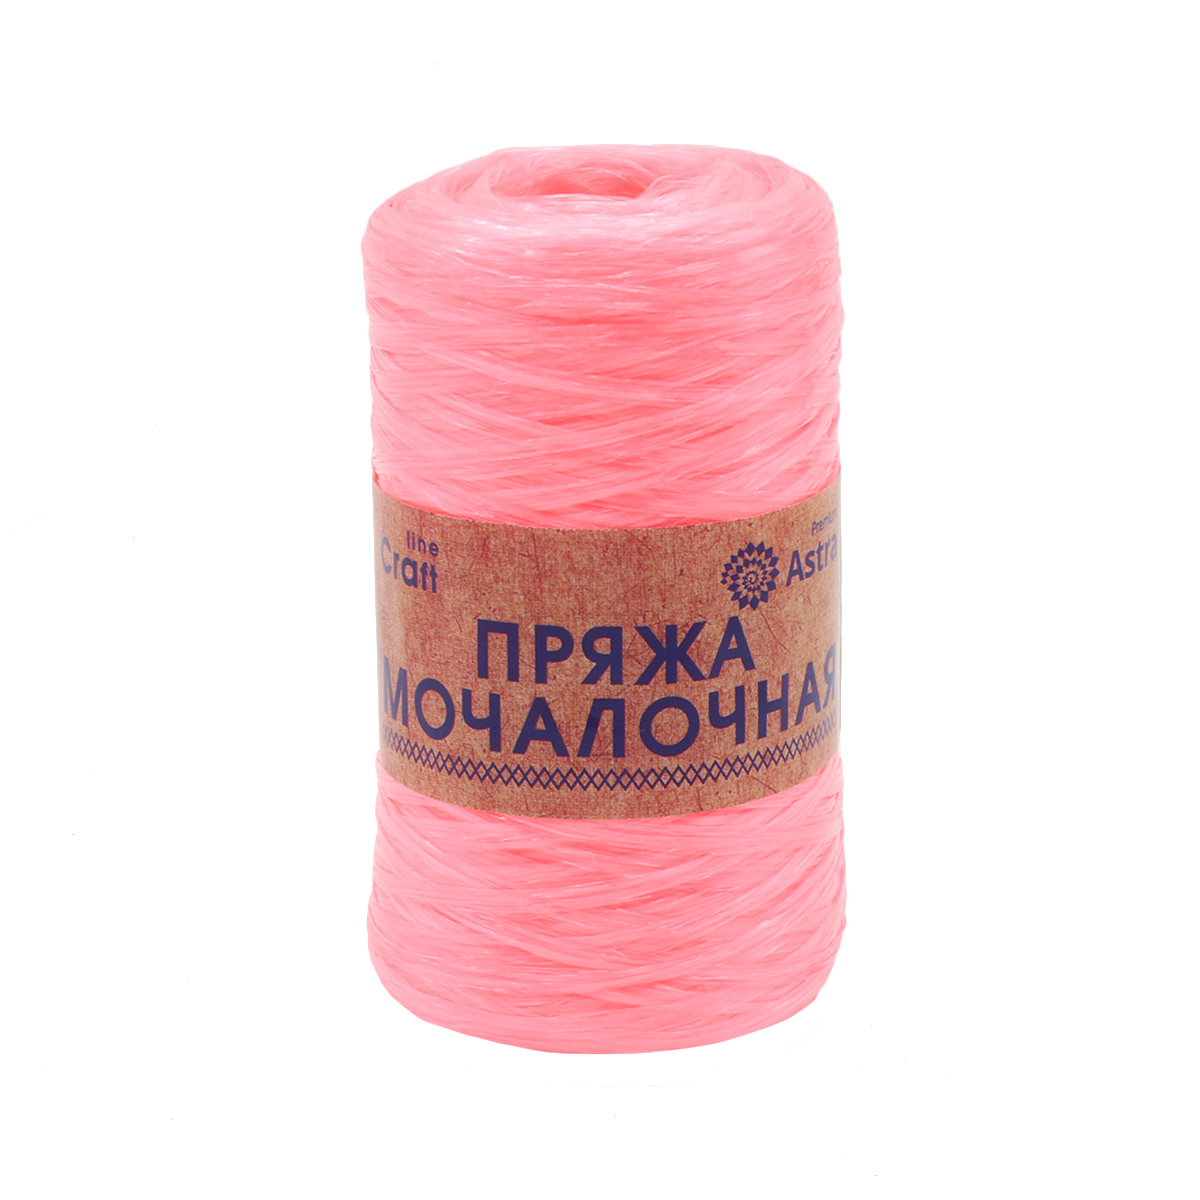 Пряжа Astra Premium 'Мочалочная' 50г, 200м (100% полипропилен) (розовый персик), 10 мотков